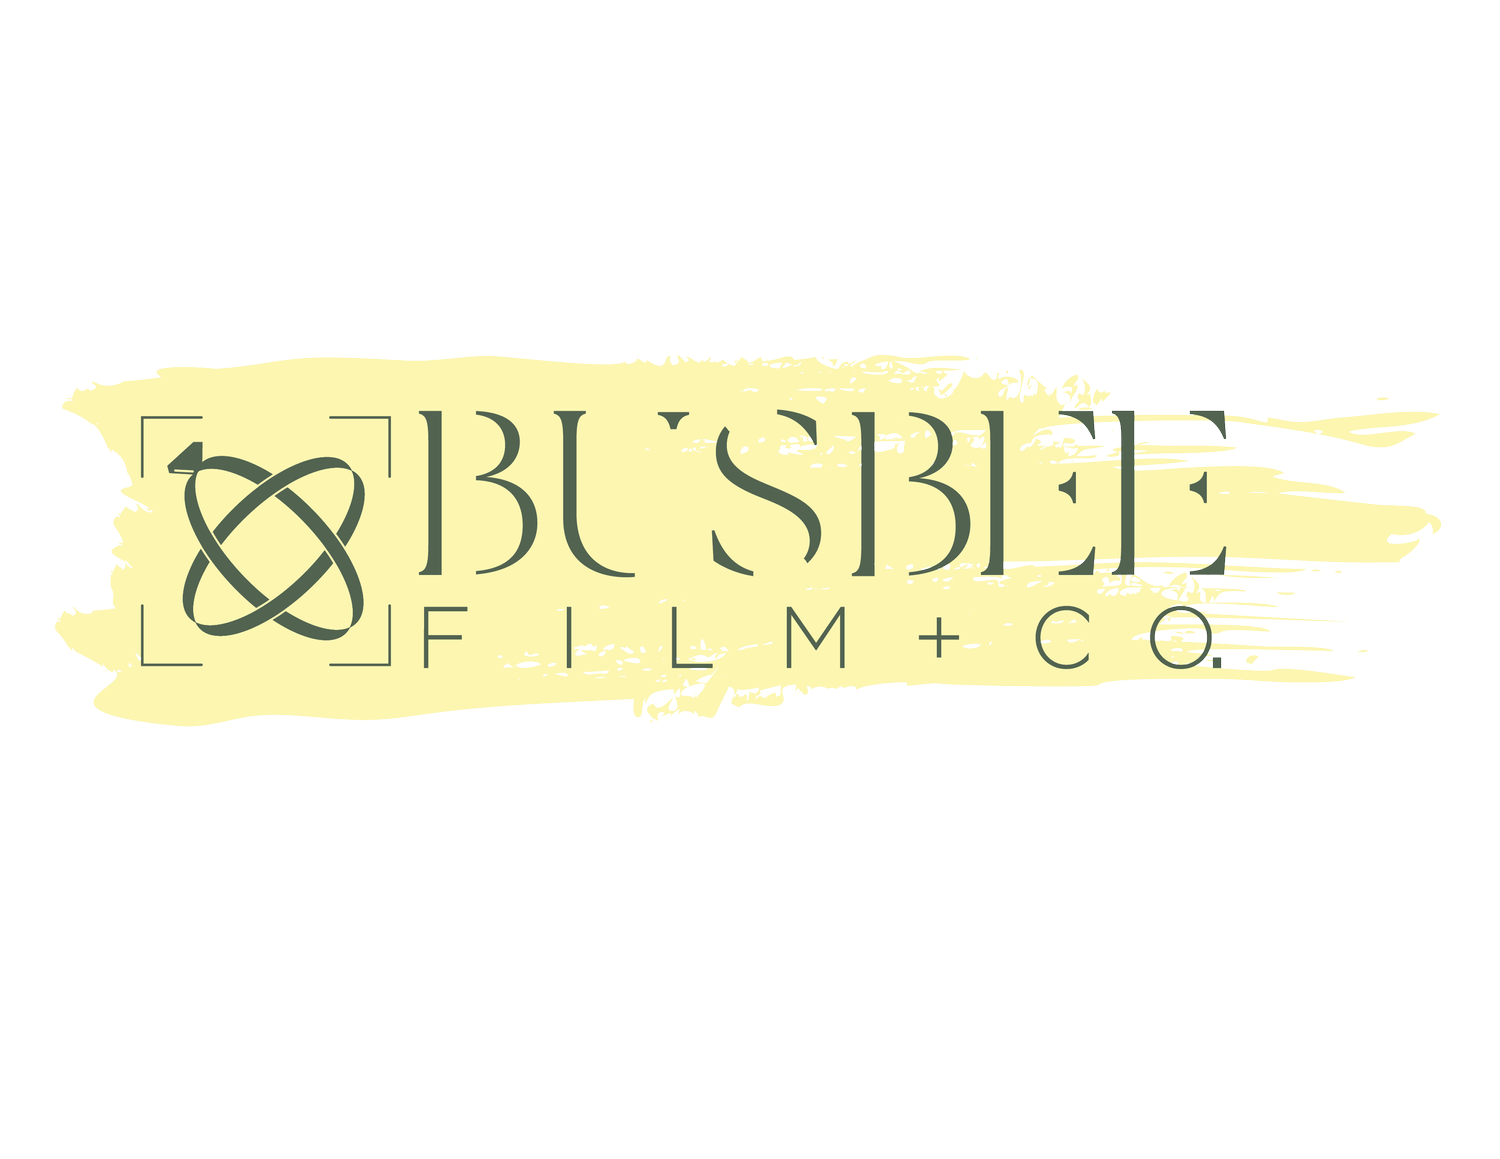 Busbee Film + Co.